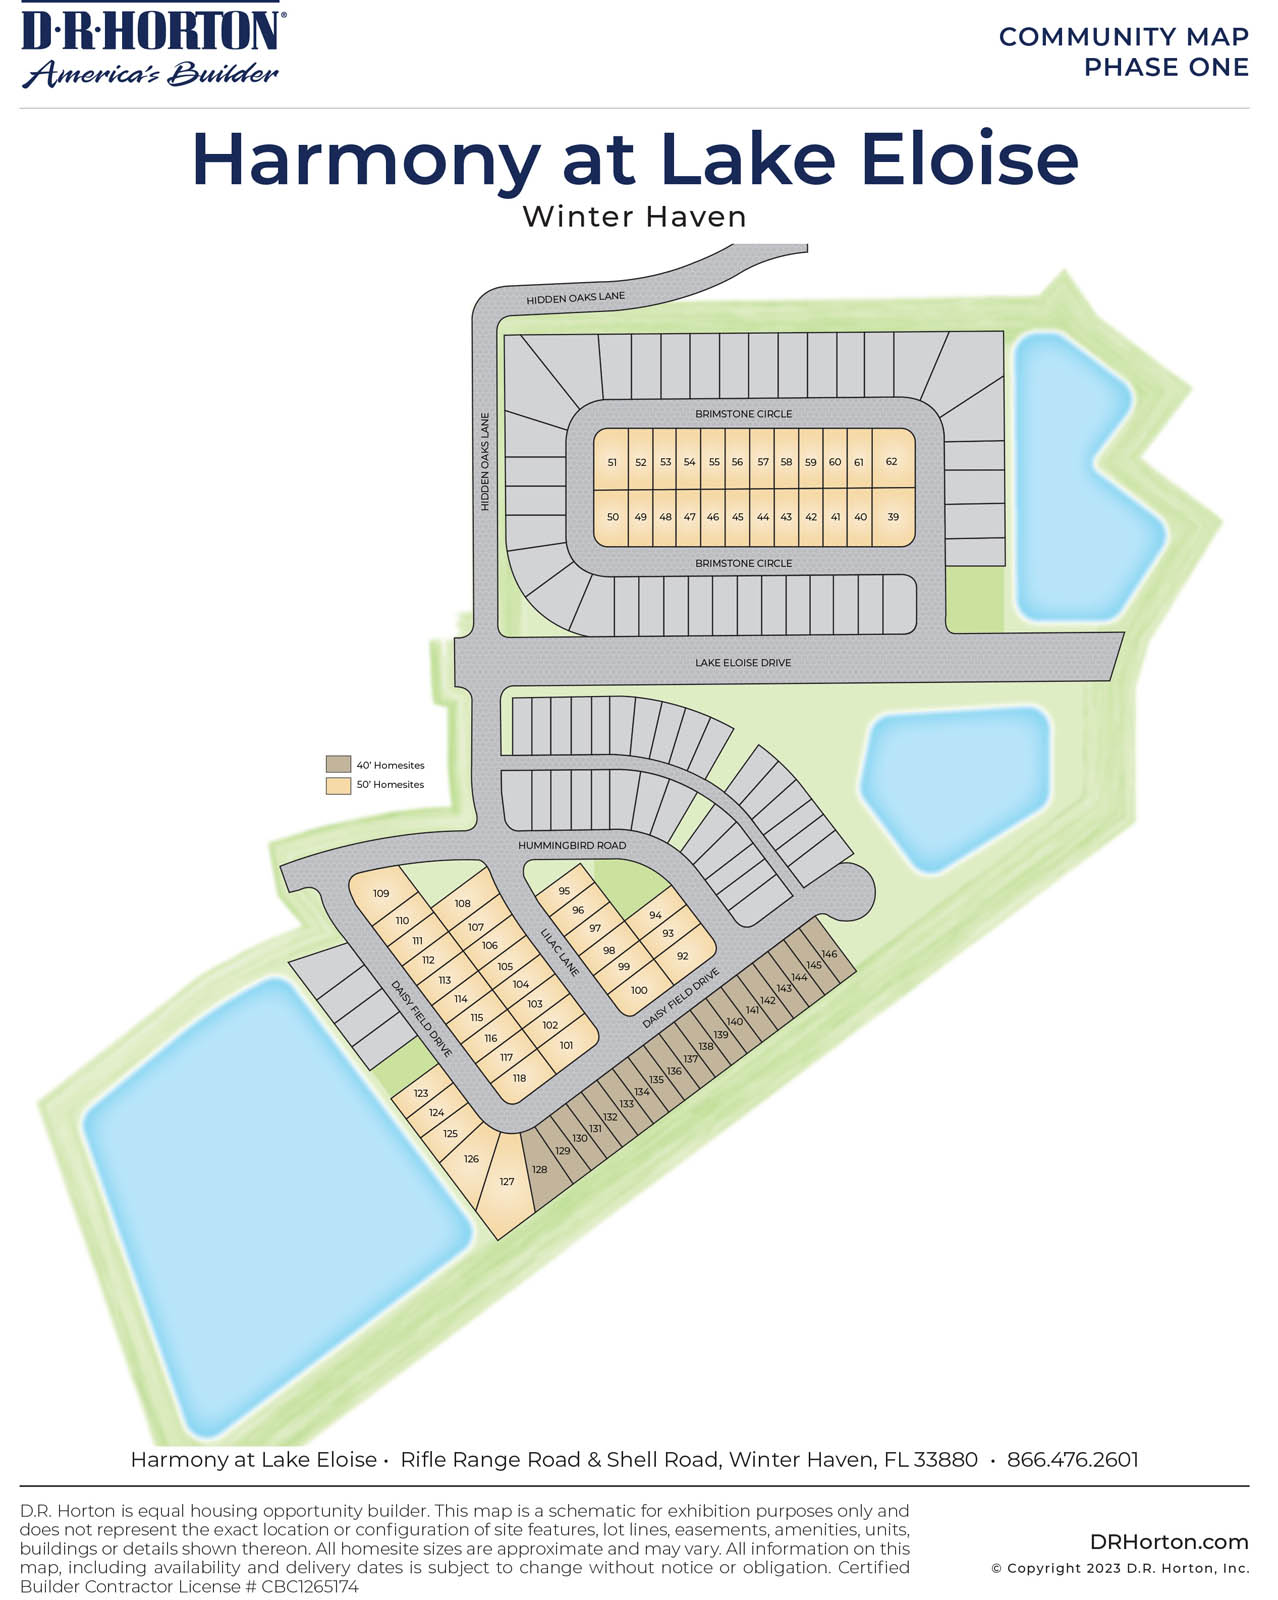 Harmony at Lake Eloise Siteplan